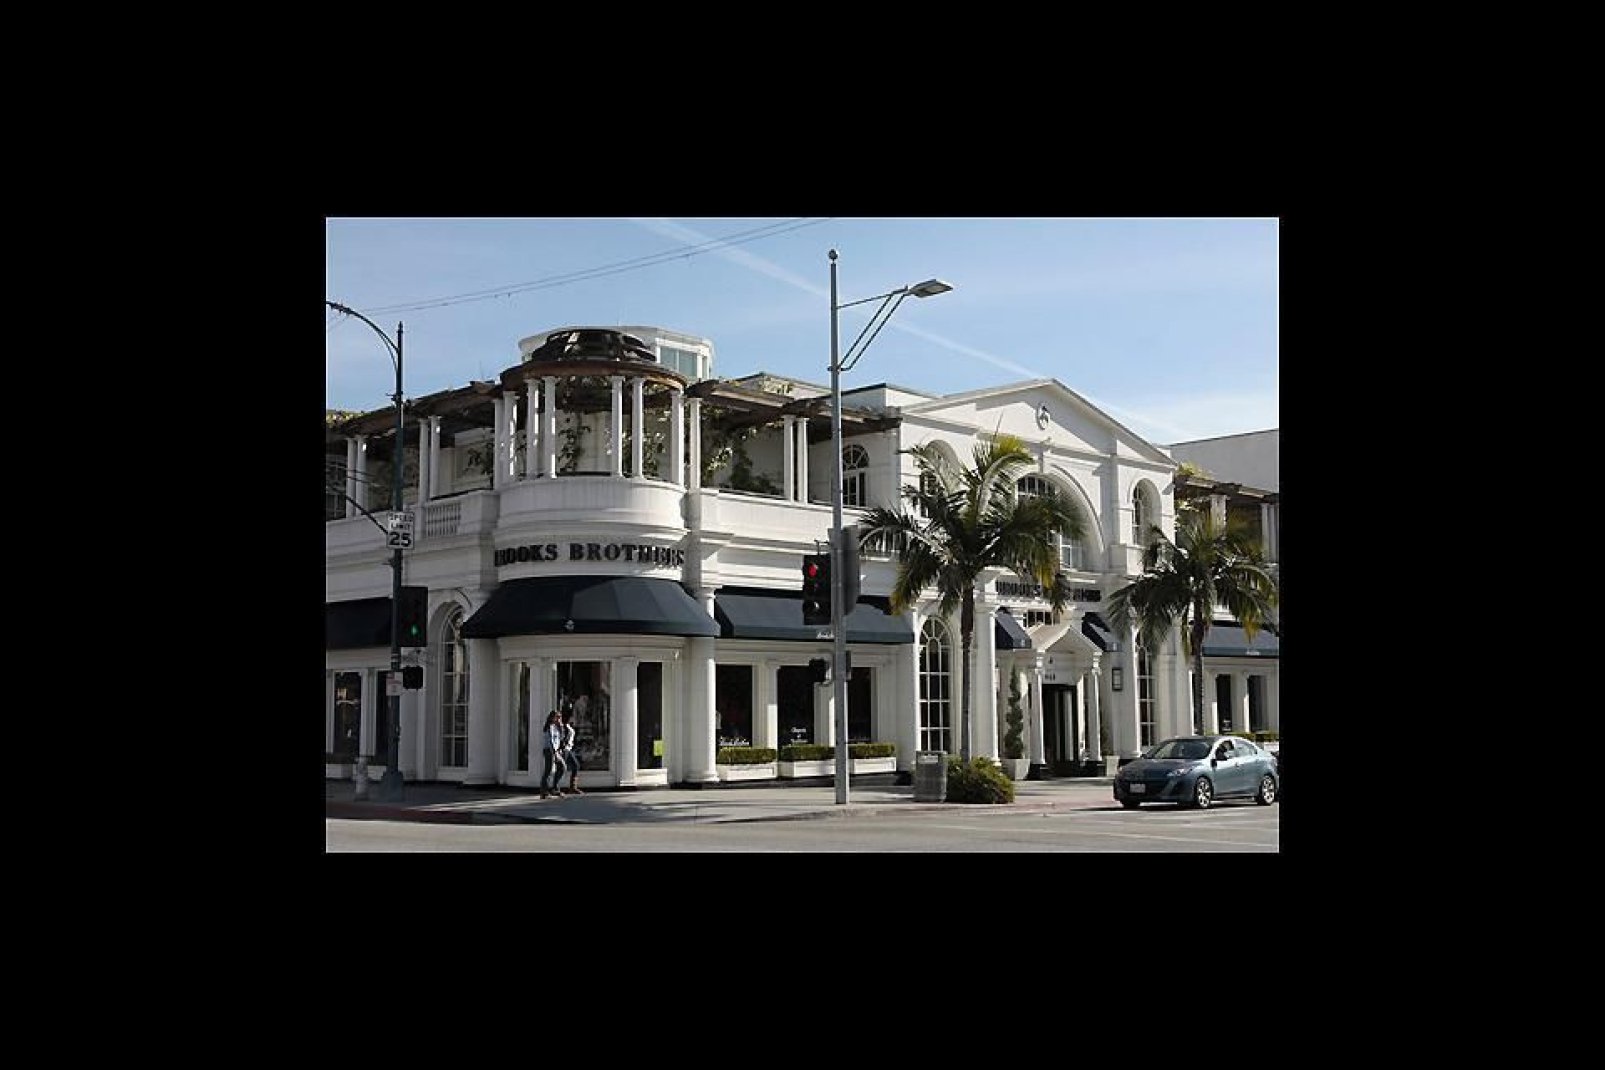 Beverly Hills ist eine unabhängige Gemeinde direkt neben Los Angeles und besonders für seine luxuriösen Einkaufsmeilen bekannt.